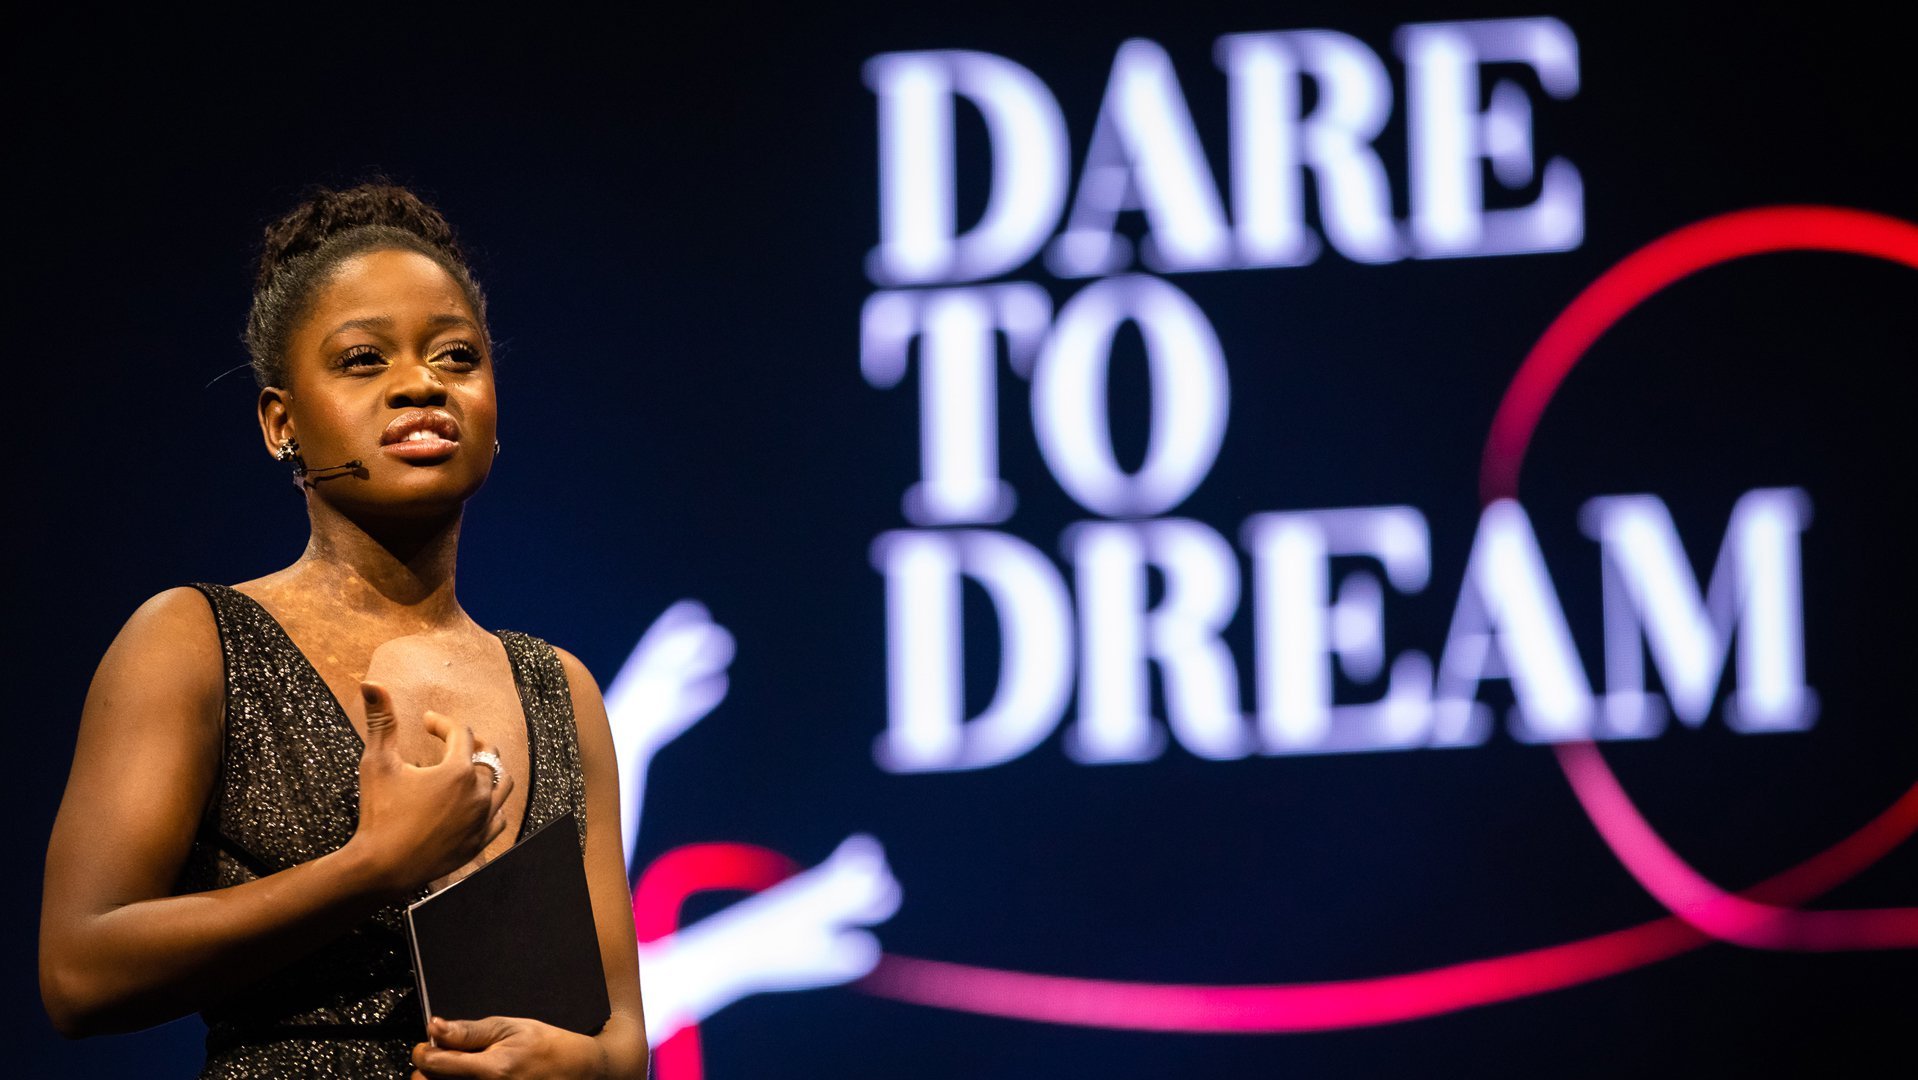 Michaela DePrince speech tijdens event Dare to Dream voor War Child